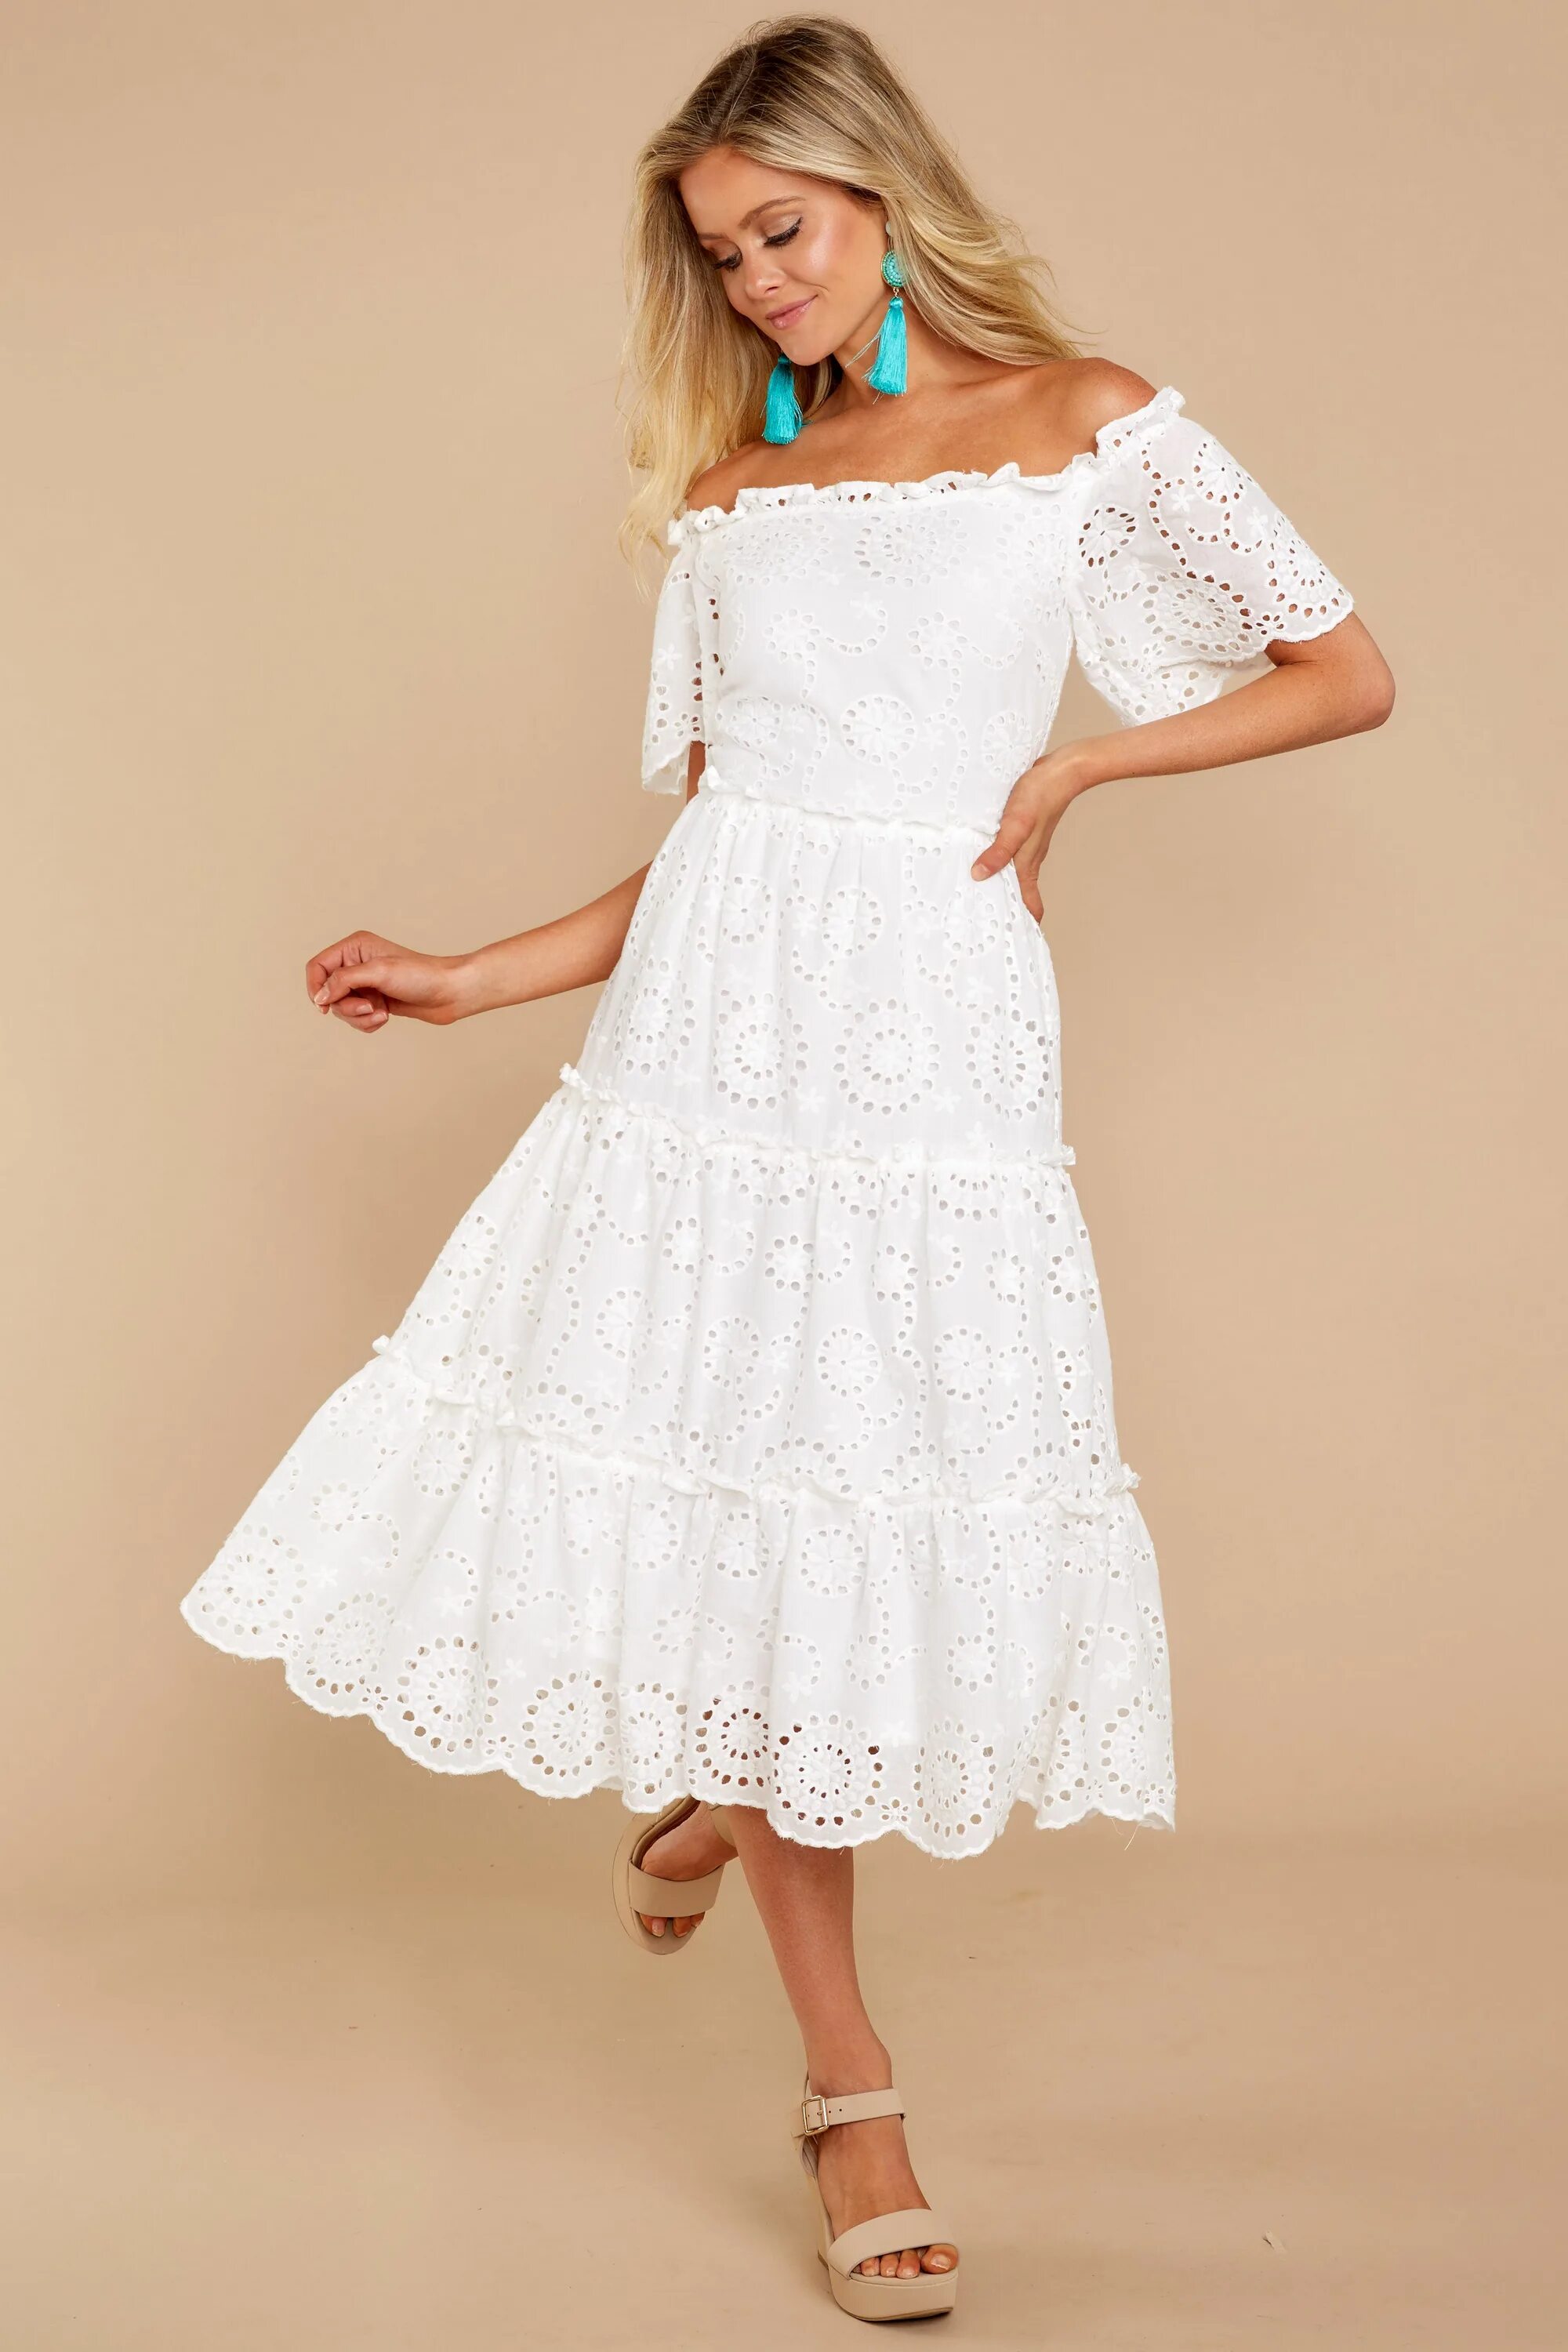 Белое платье из хлопка. Платье из шитья. Белое летнее платье. Платье кружевное летнее. Сарафан белый кружевной.